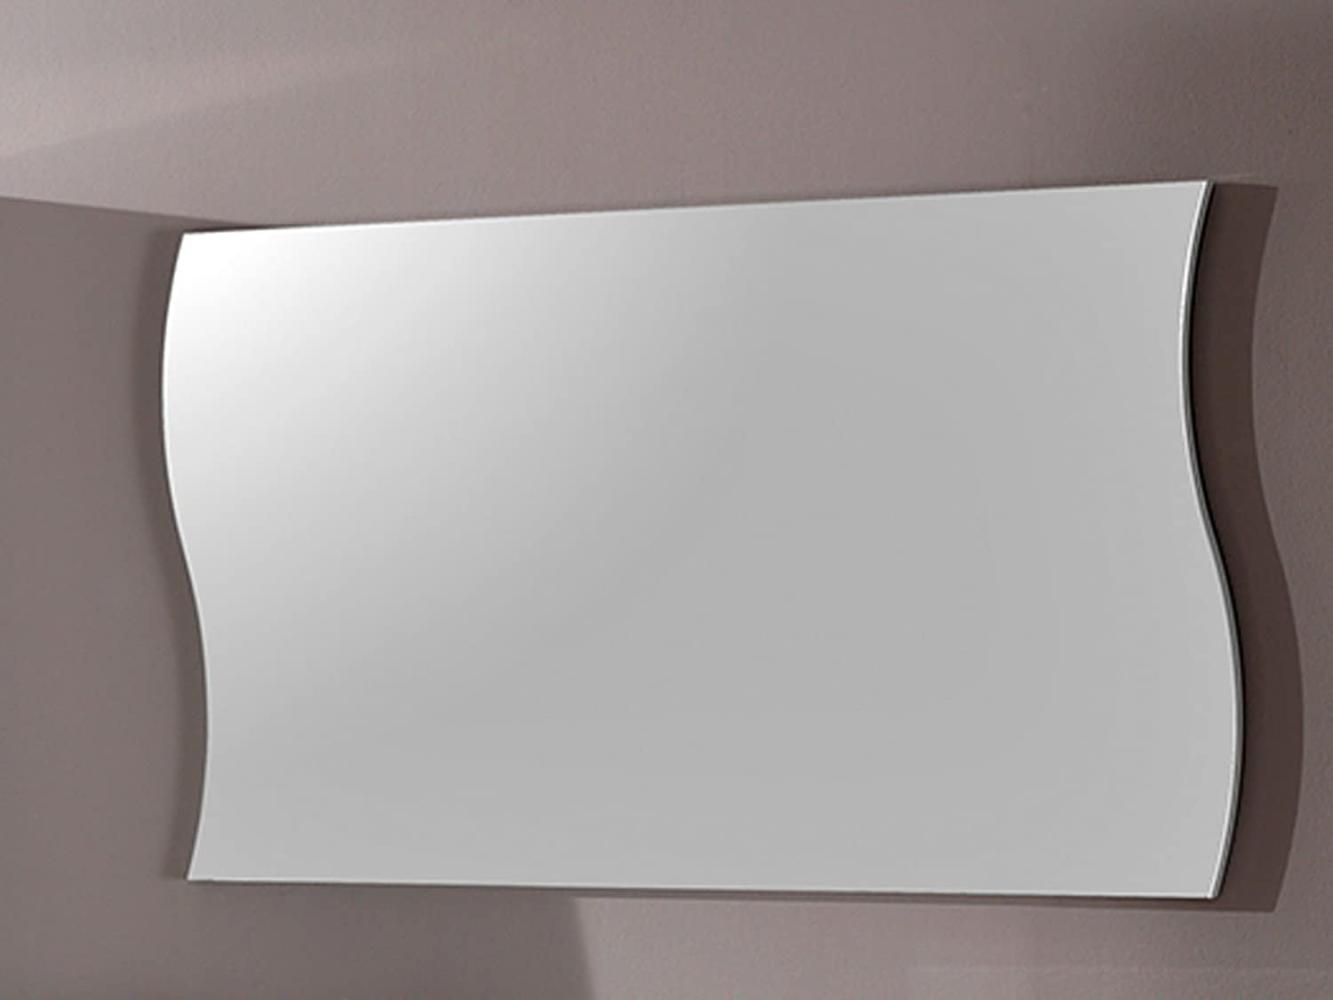 Wandspiegel >Onda< aus Spiegelglas - 101x60x2cm (BxHxT) Bild 1